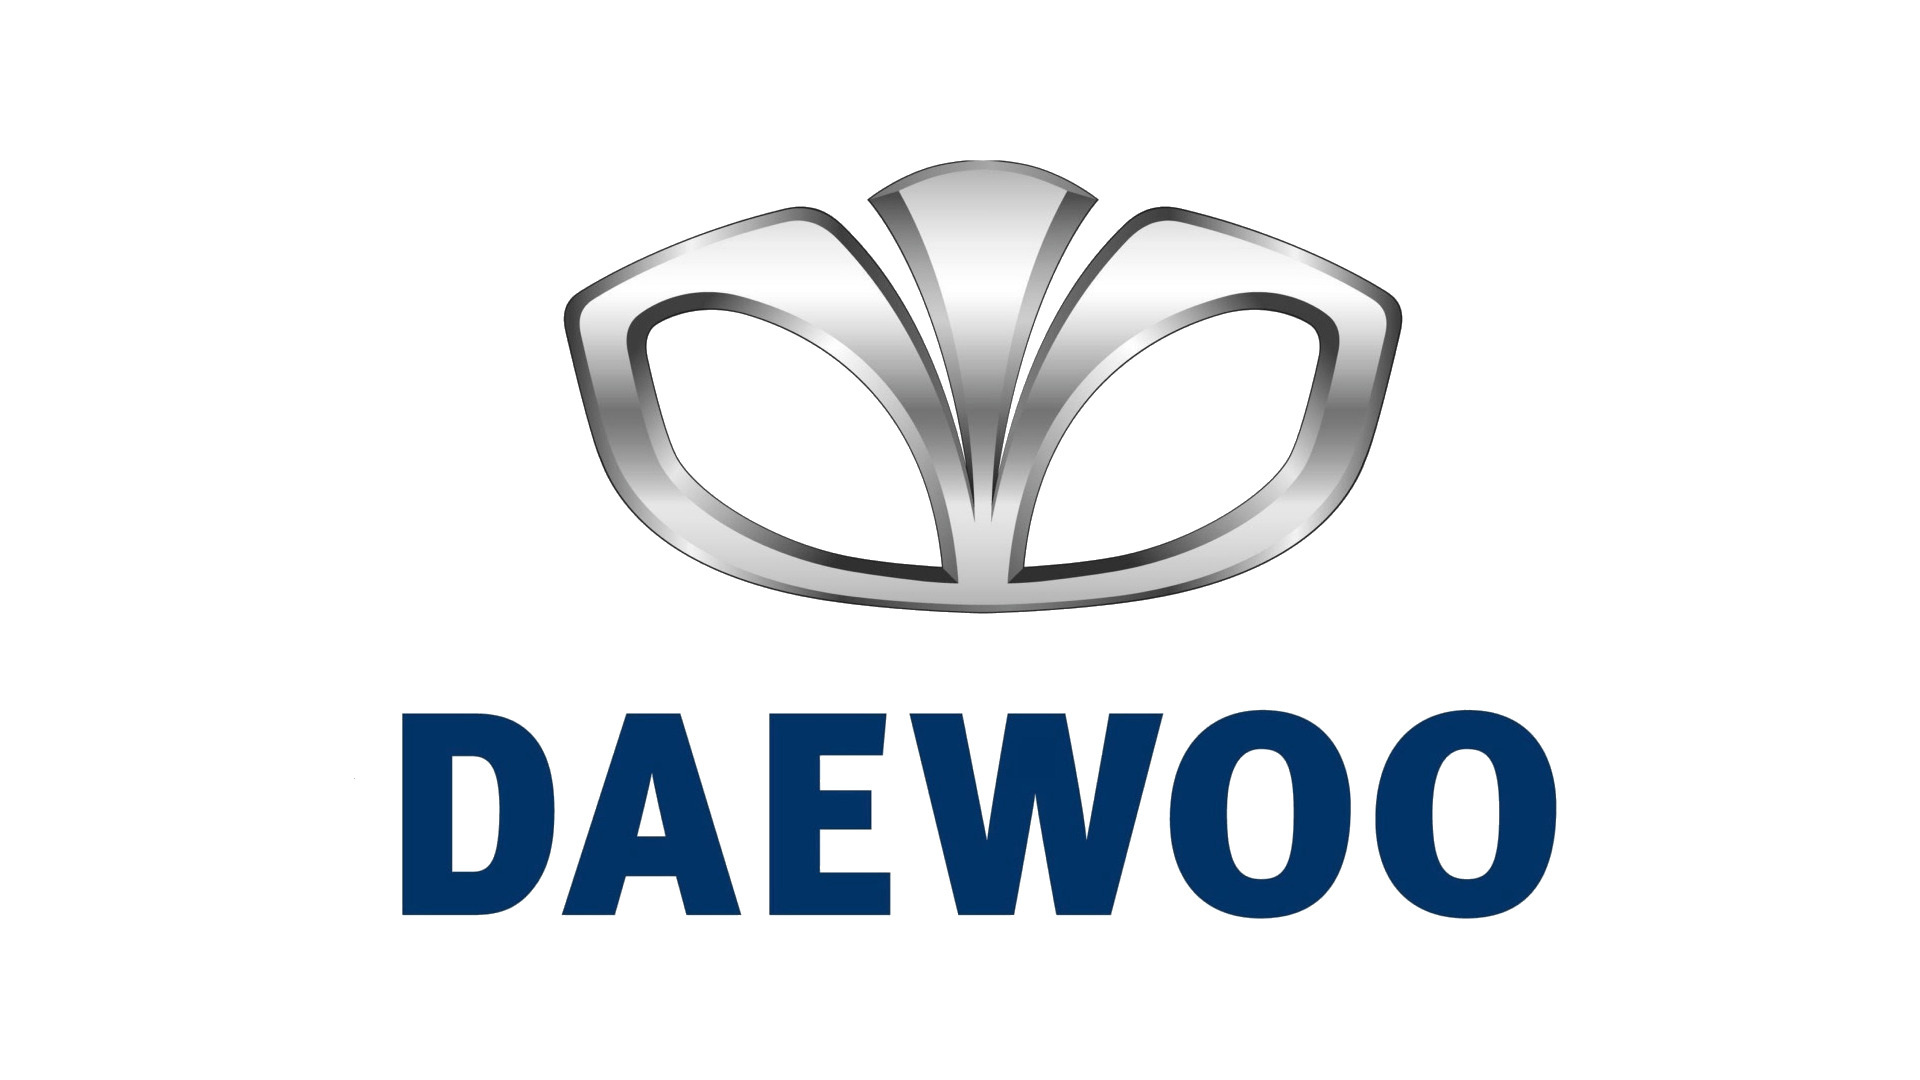 Car Logo Daewoo icons